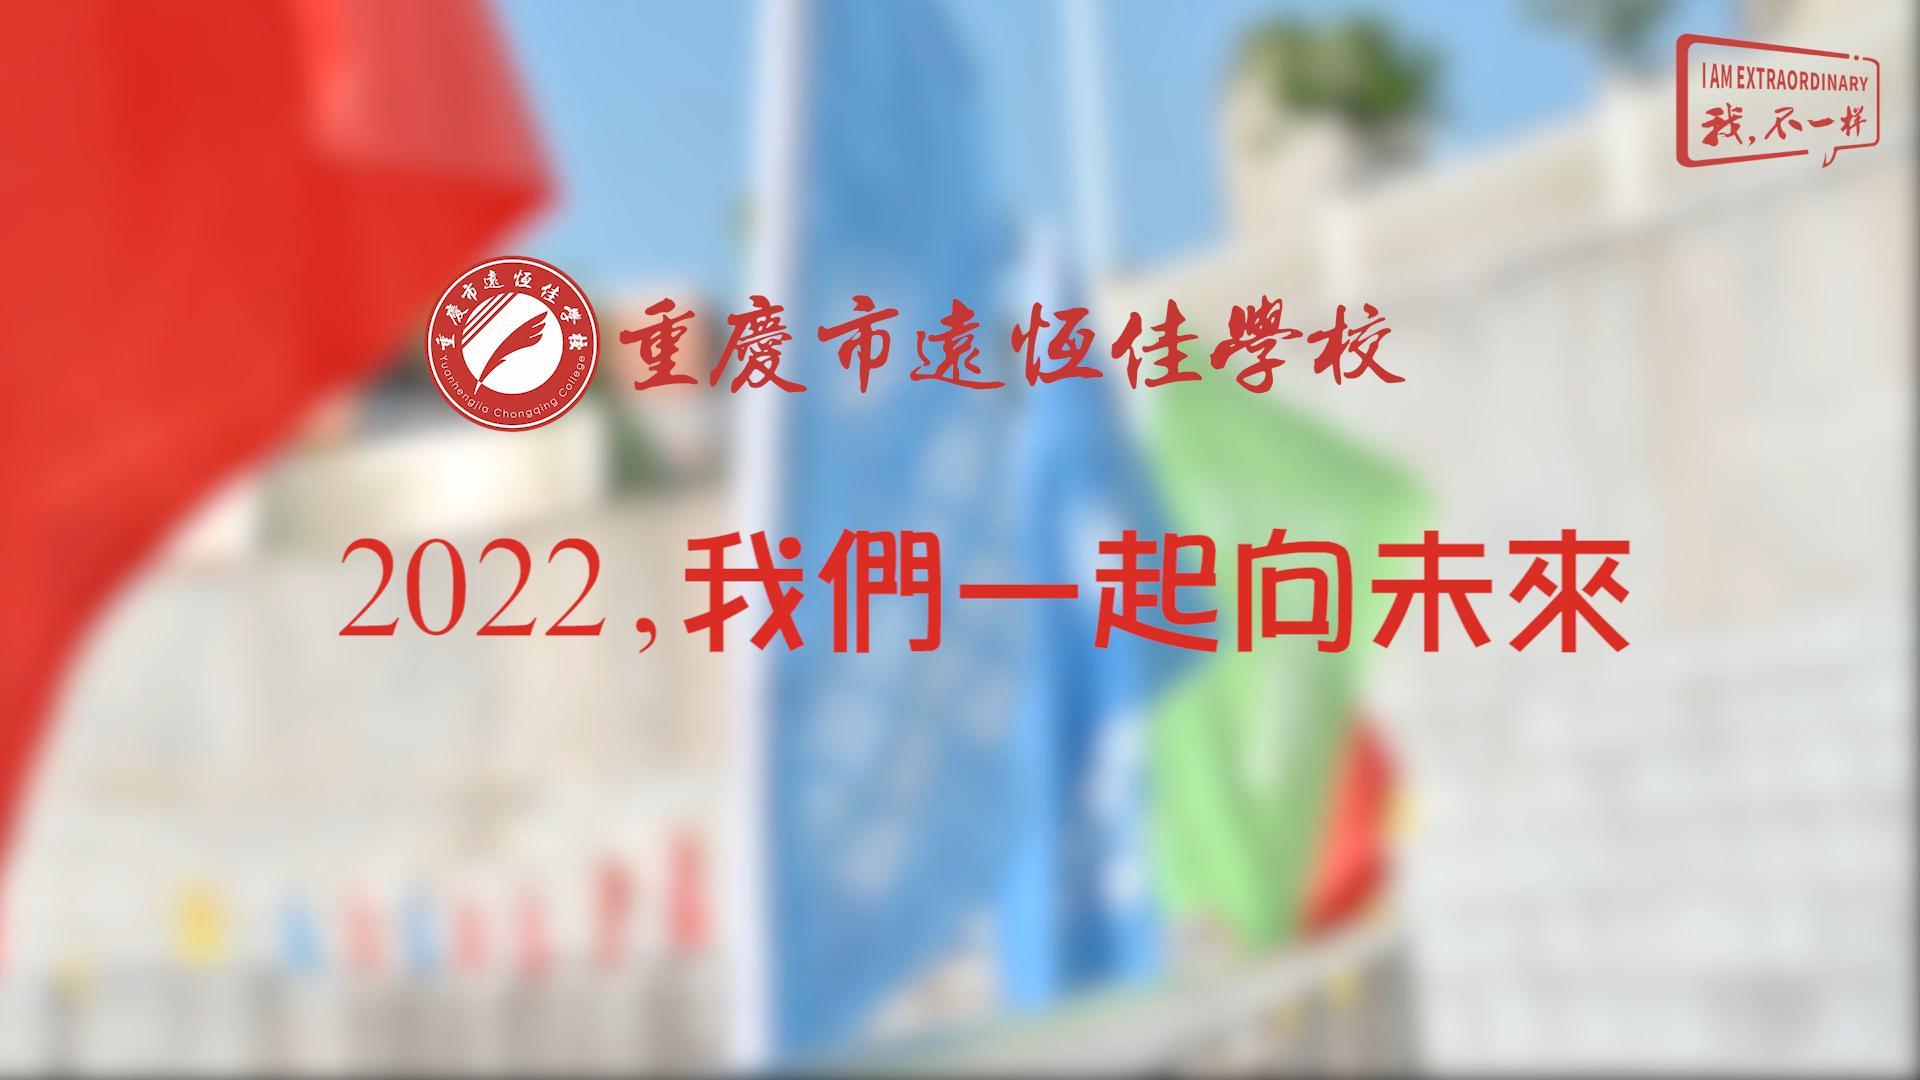 2022，我们一起向未来！——重庆市远恒佳学校2022年第四届运动会精彩回顾